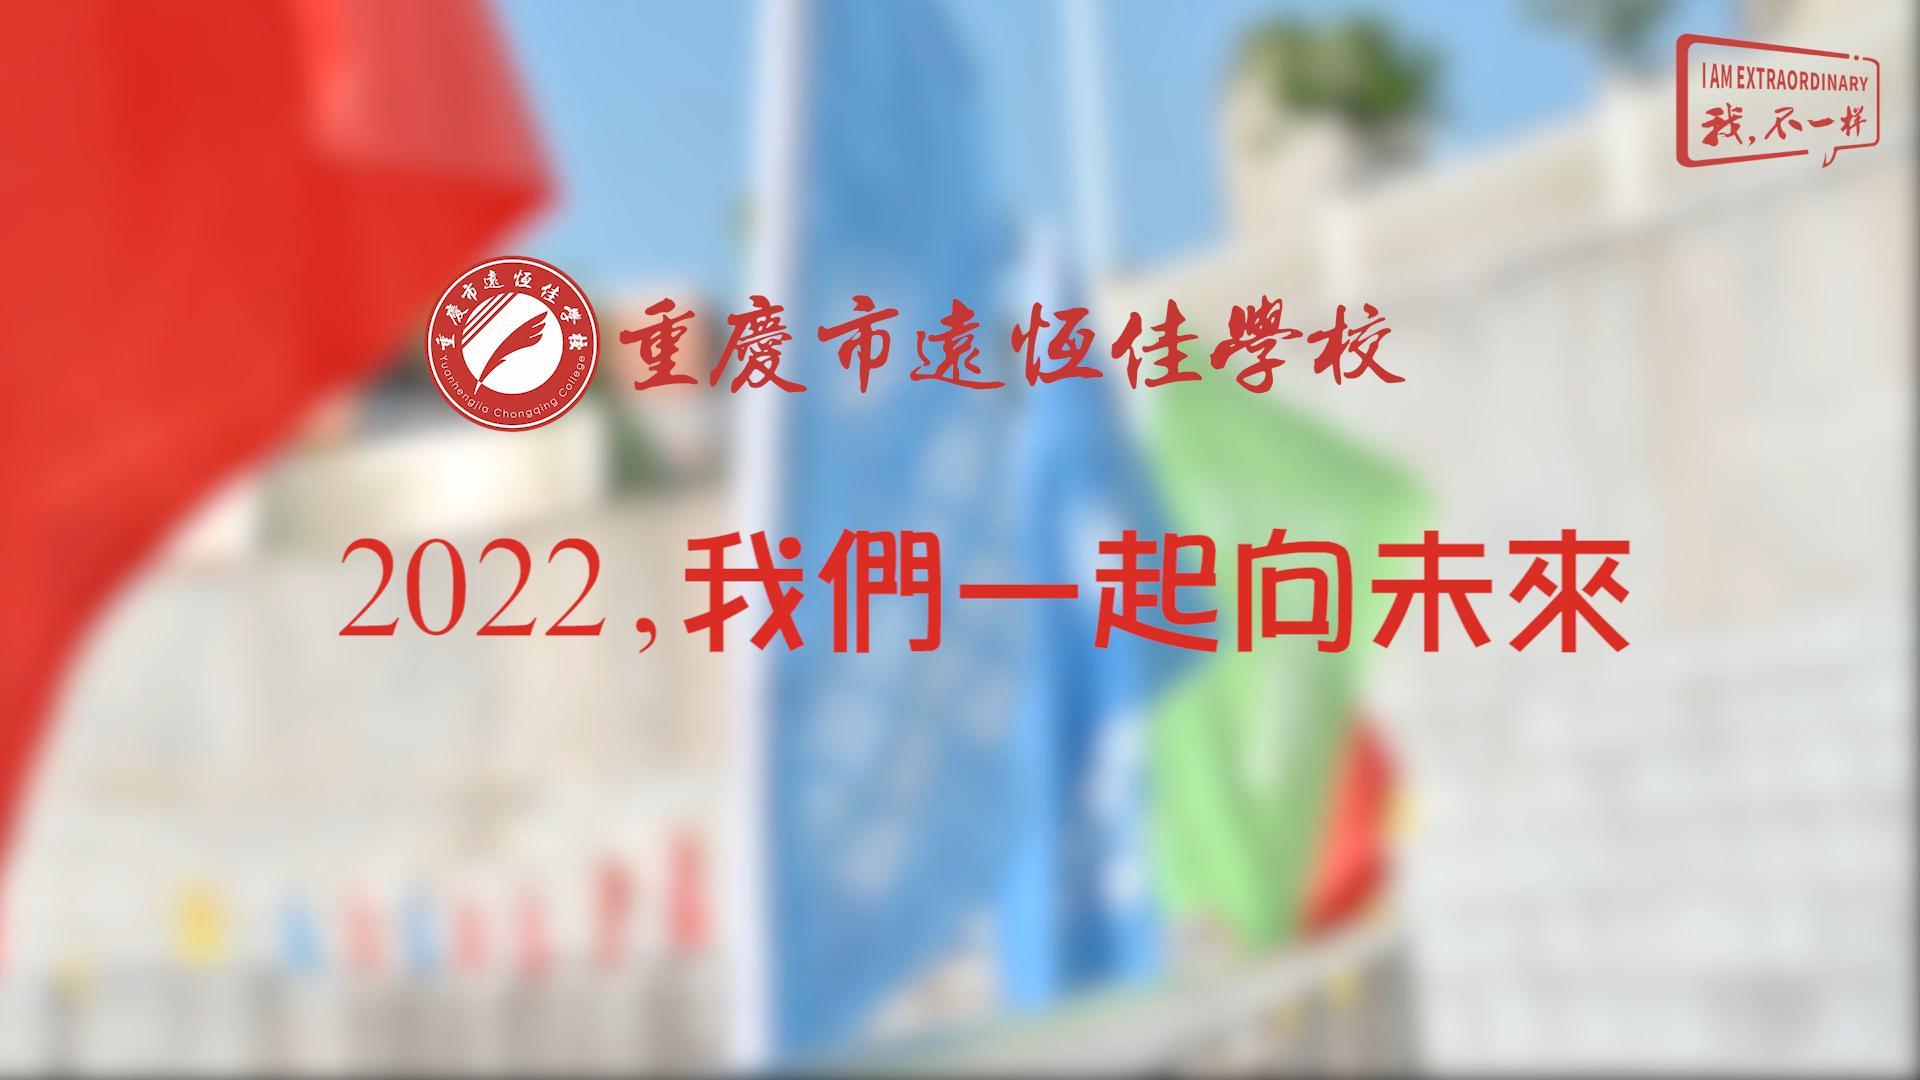 2022，我们一起向未来！——重庆市远恒佳学校2022年第四届运动会精彩回顾